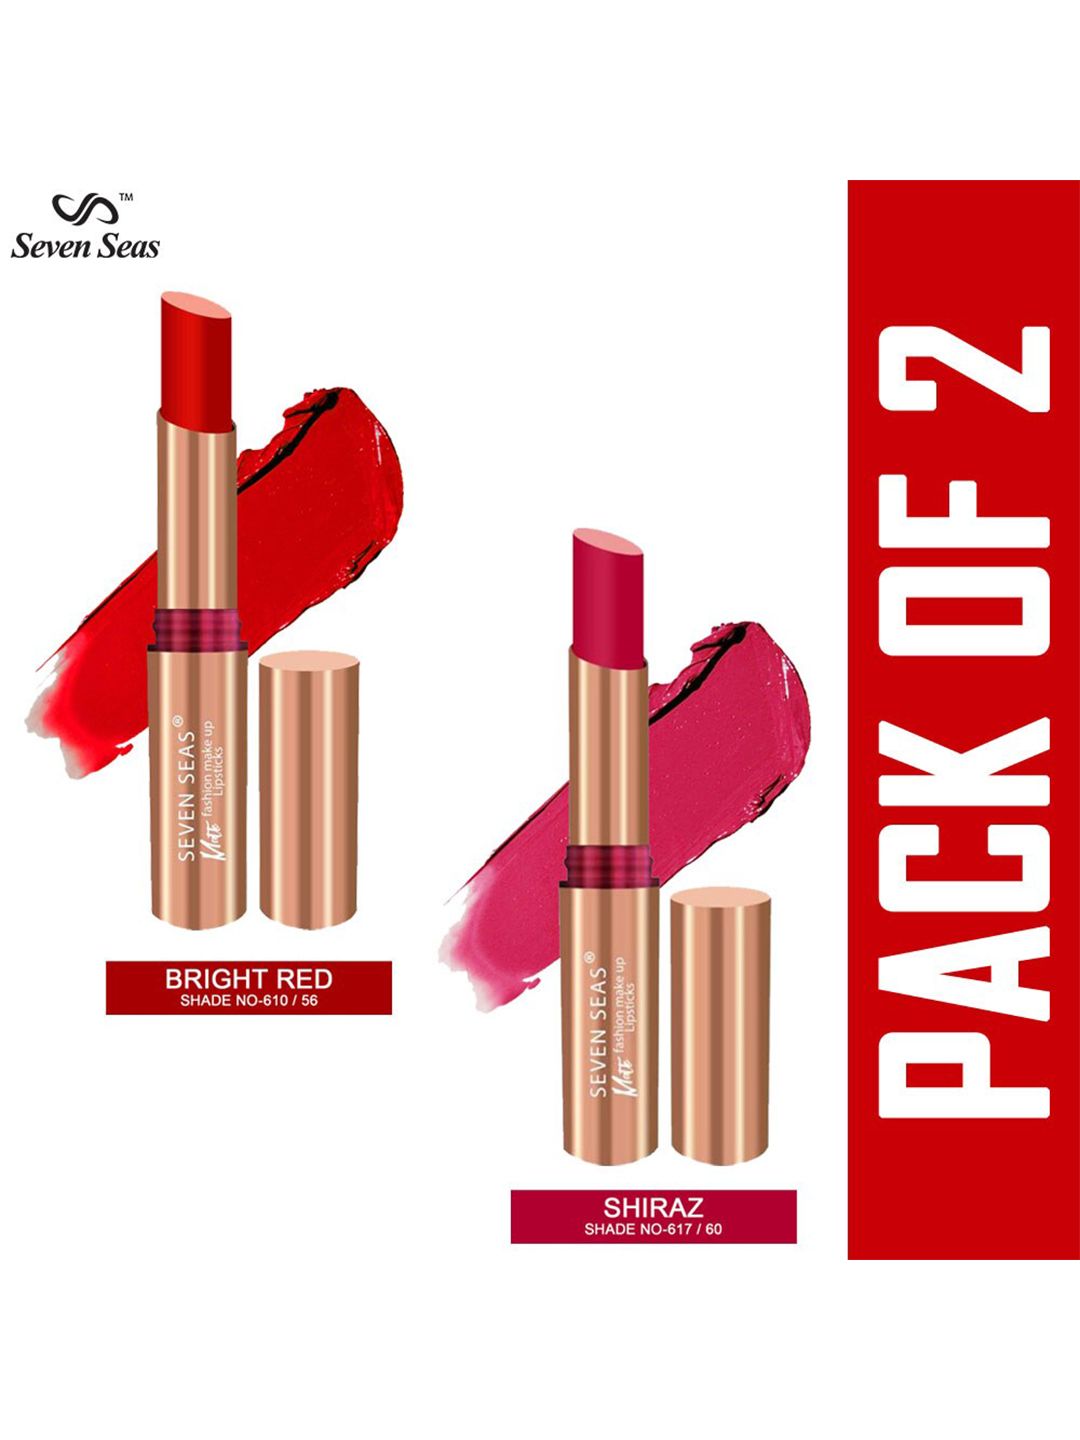 Seven Seas Set of 2 Matte Fashion Makeup Lipstick - Bright Red 56 & Shiraz 60 Price in India